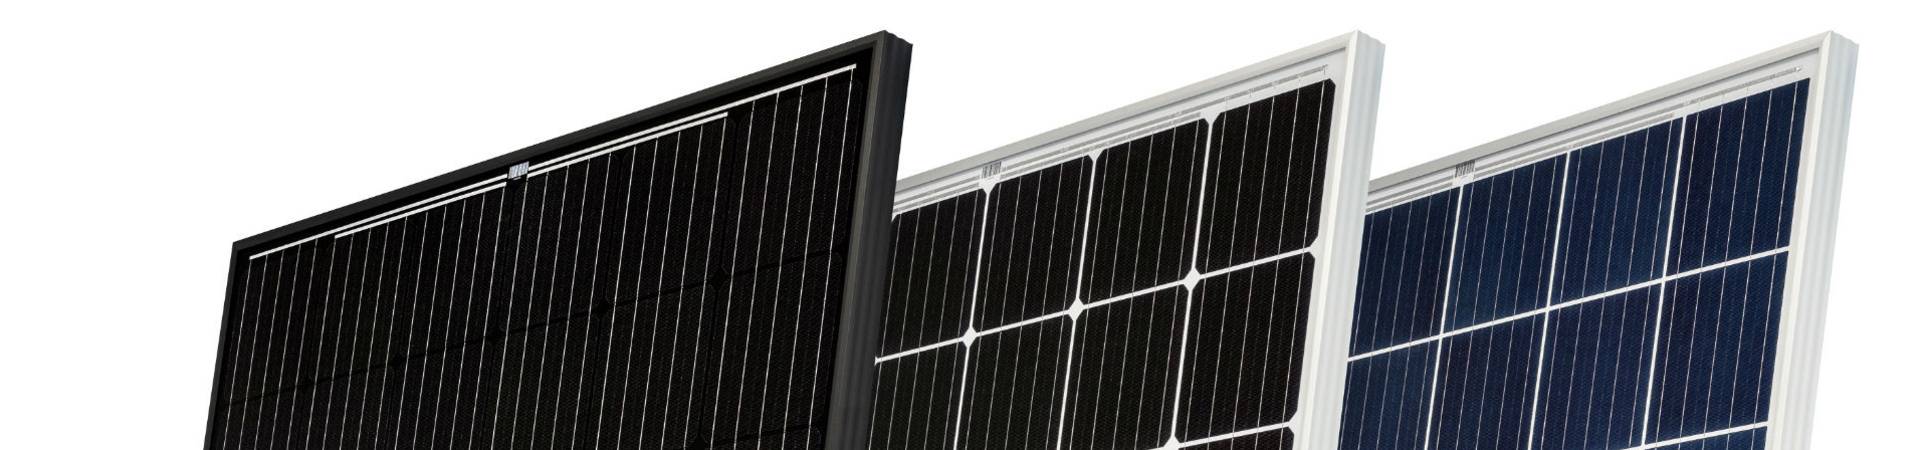 Heckert Solar Photovoltaikmodule